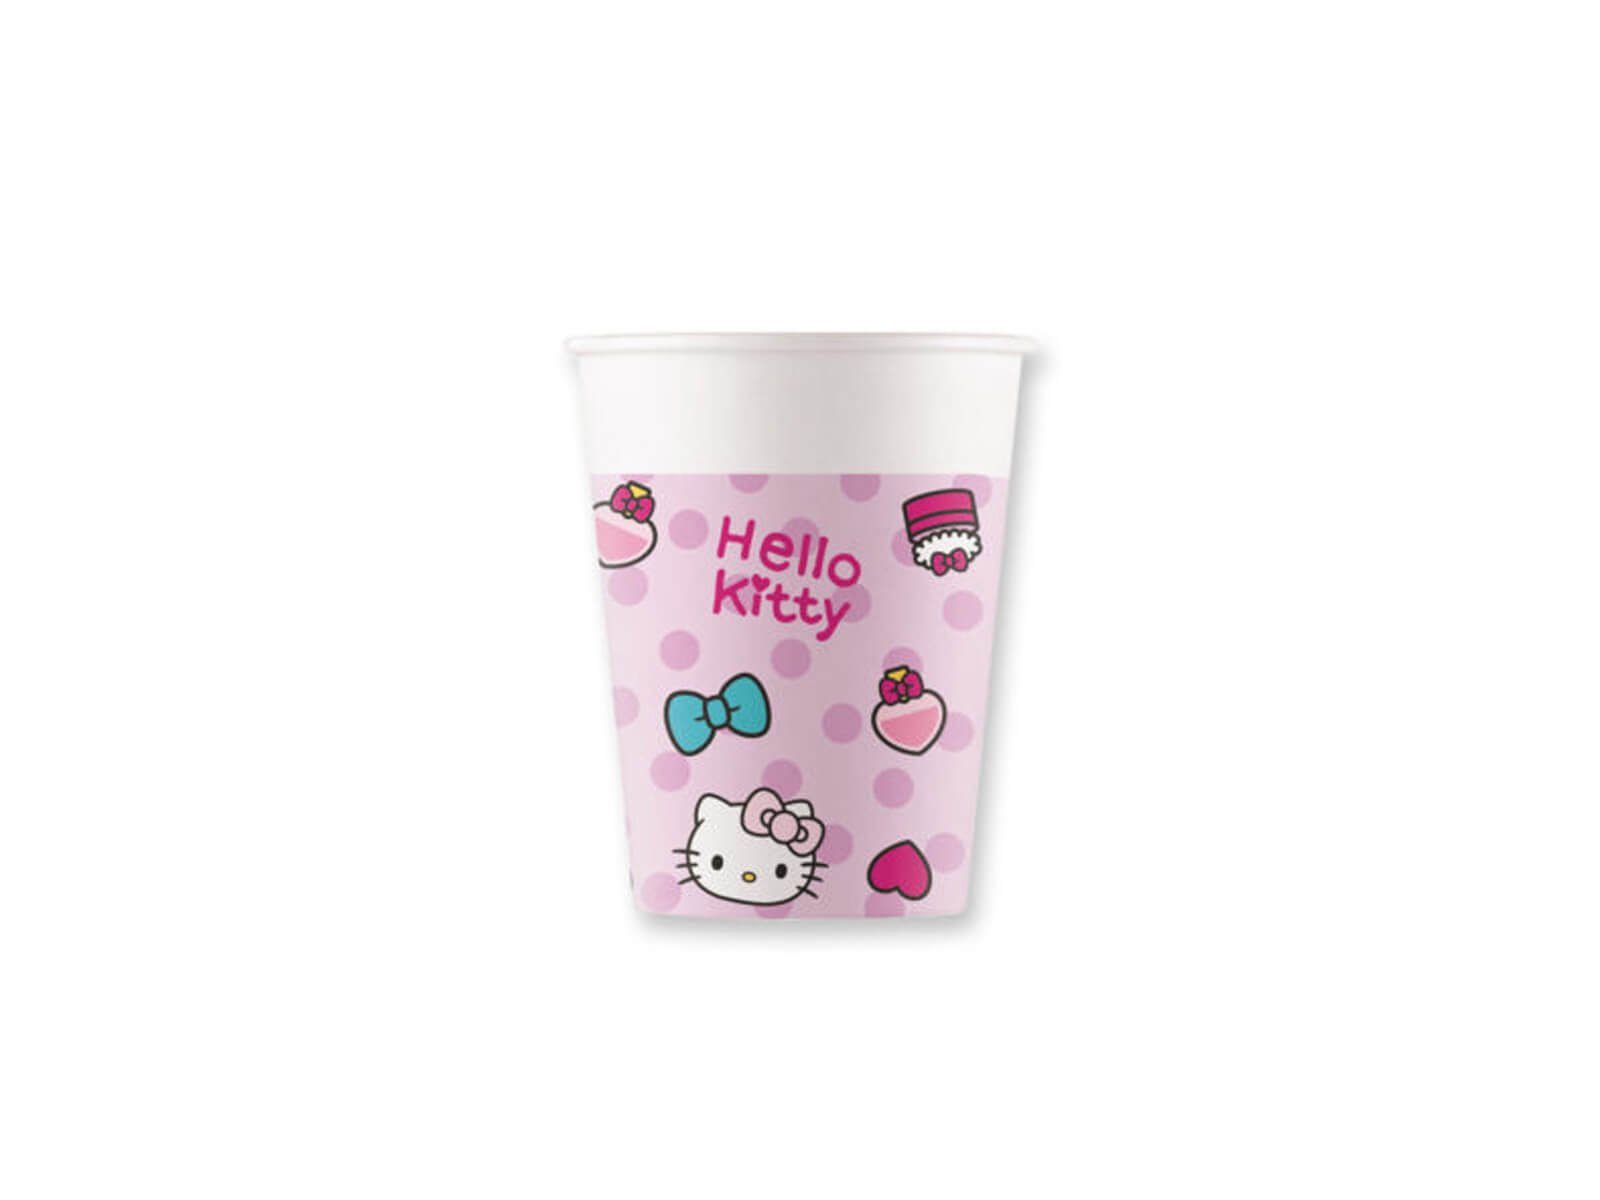 Festivalartikel Einwegbecher Hello Kitty 200 Set ml 8 Pappbecher Einwegbecher